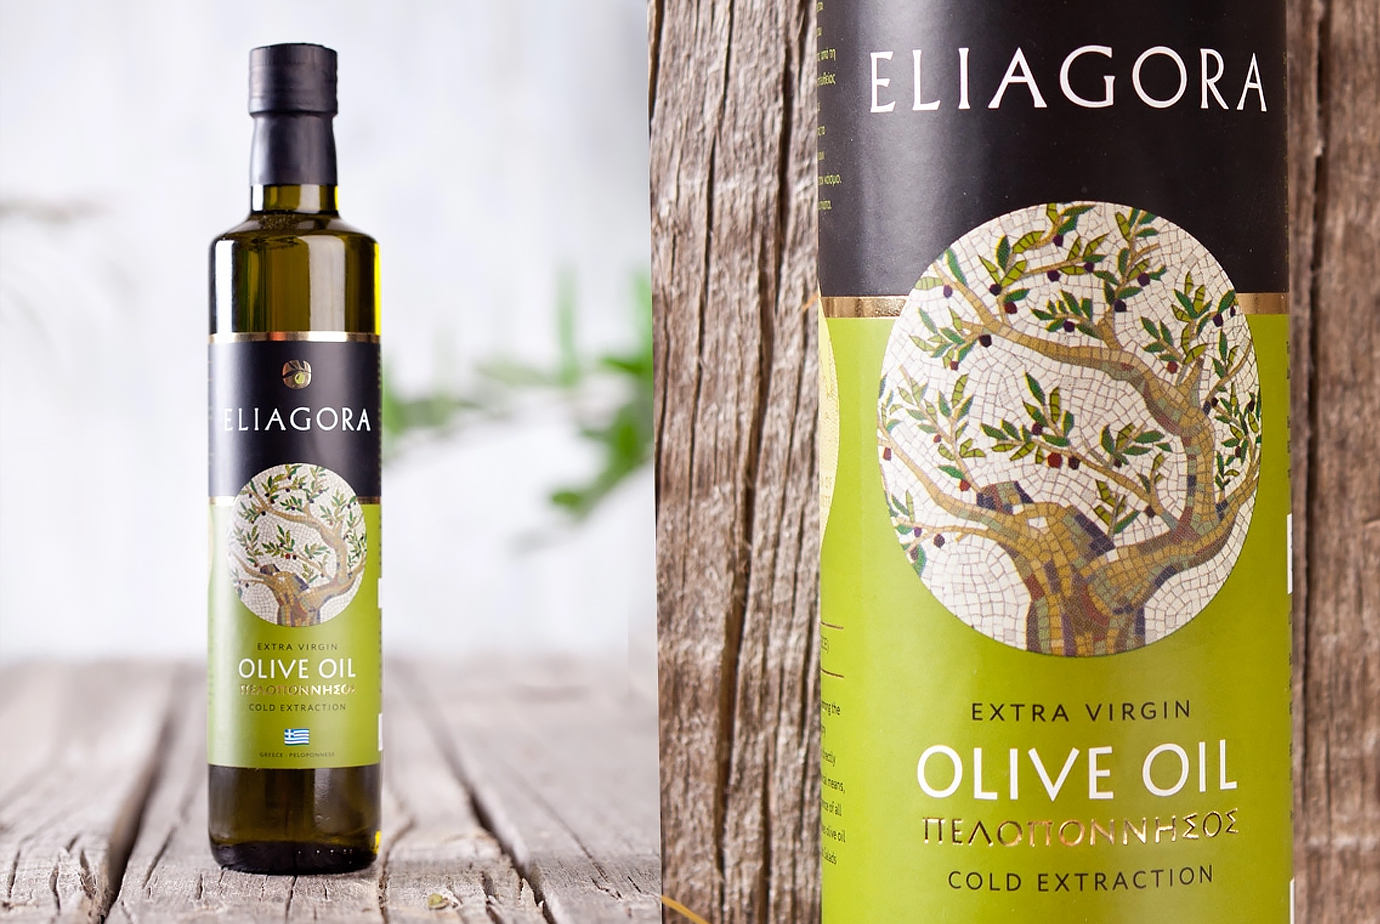 Дизайн этикетки оливкового масла Eliagora